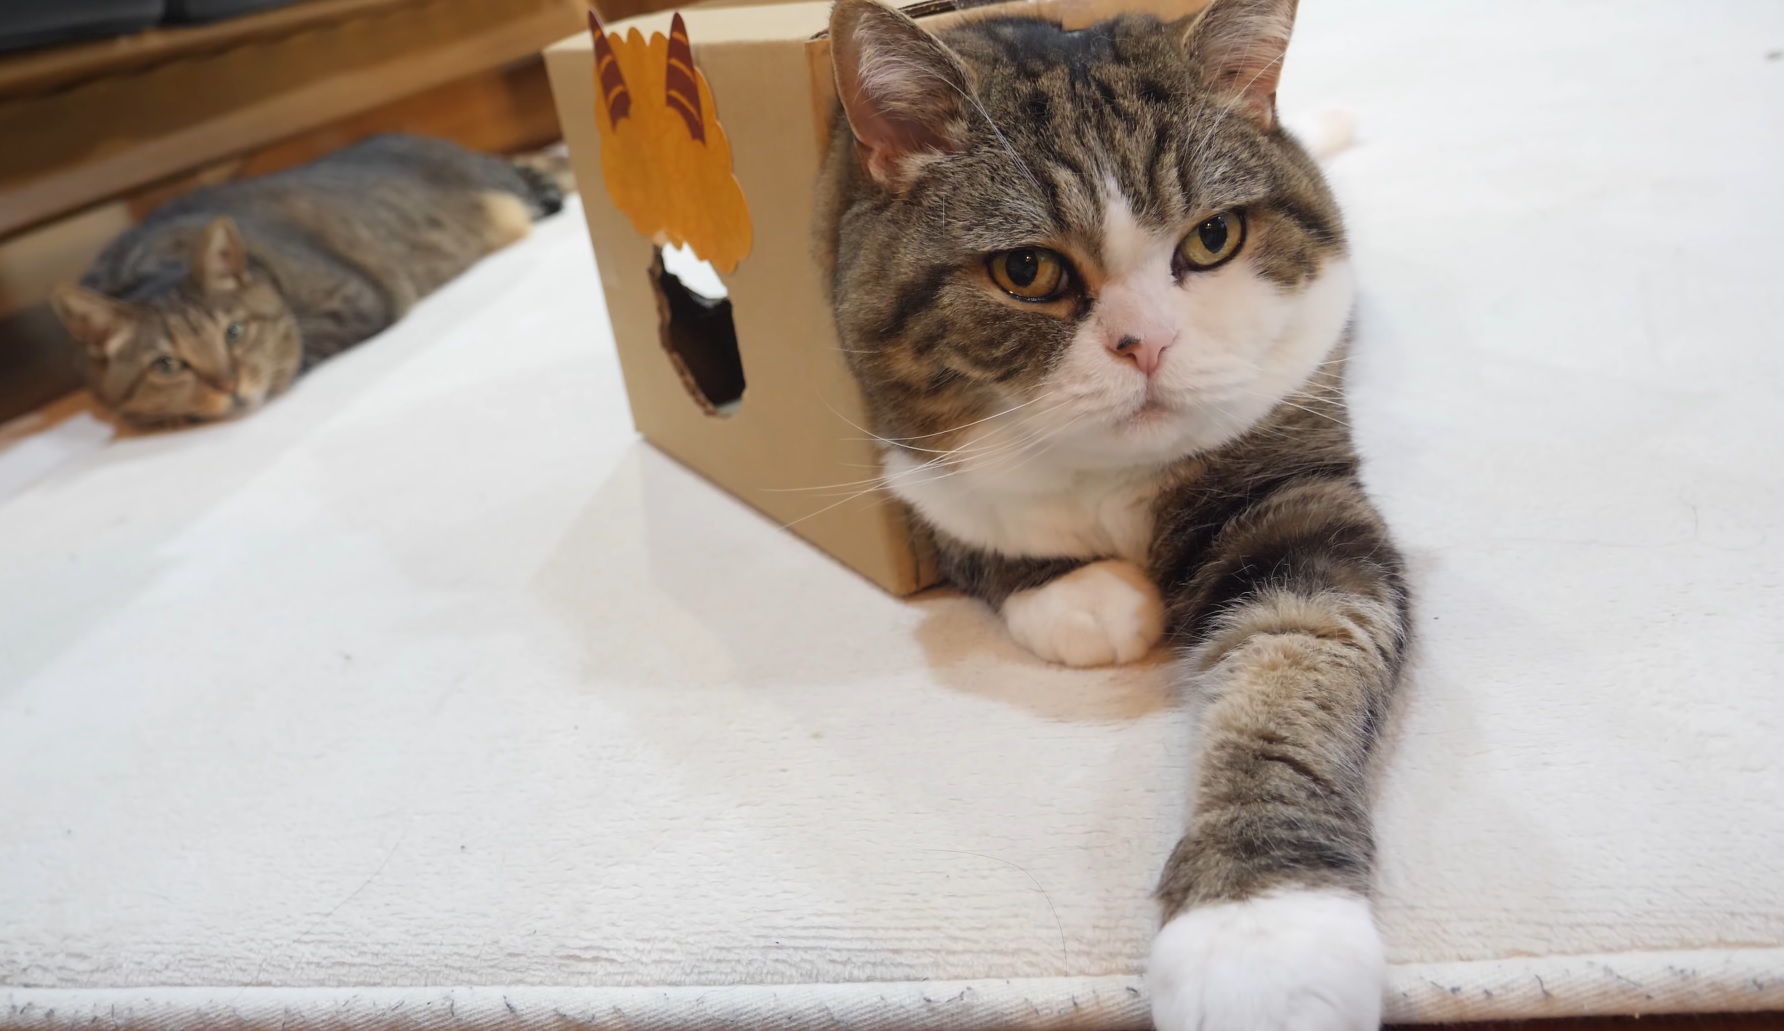 Maru Sits In Strange Box